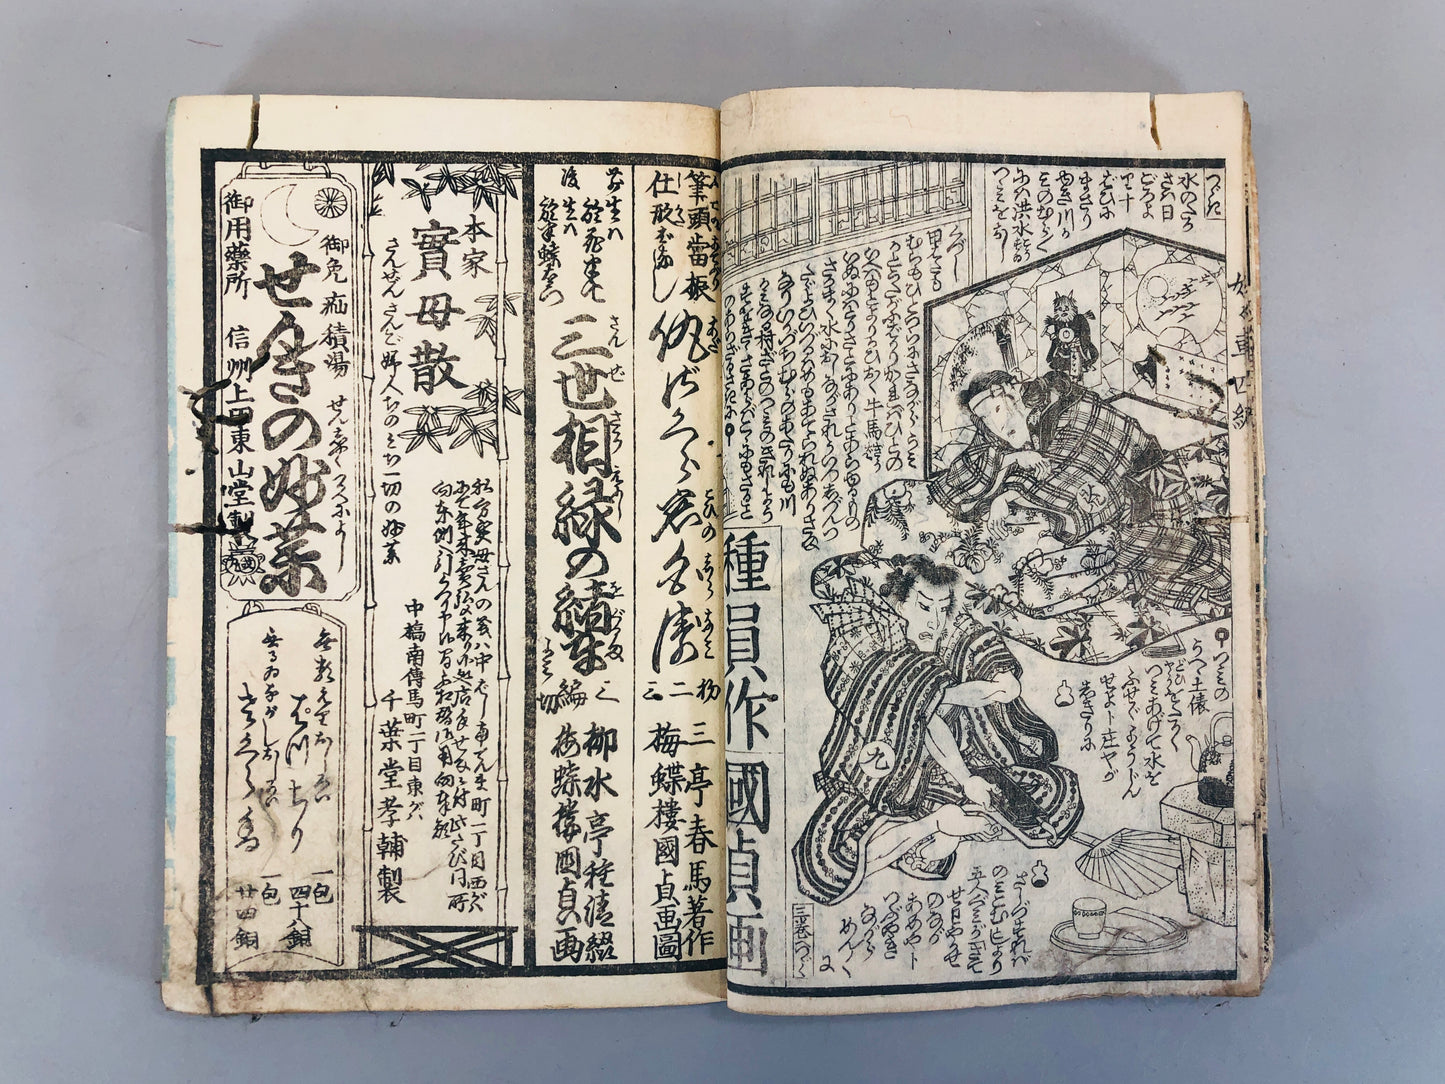 Y5460 WOODBLOCK PRINT Japanese style book Kunisada Japan Ukiyoe antique vintage